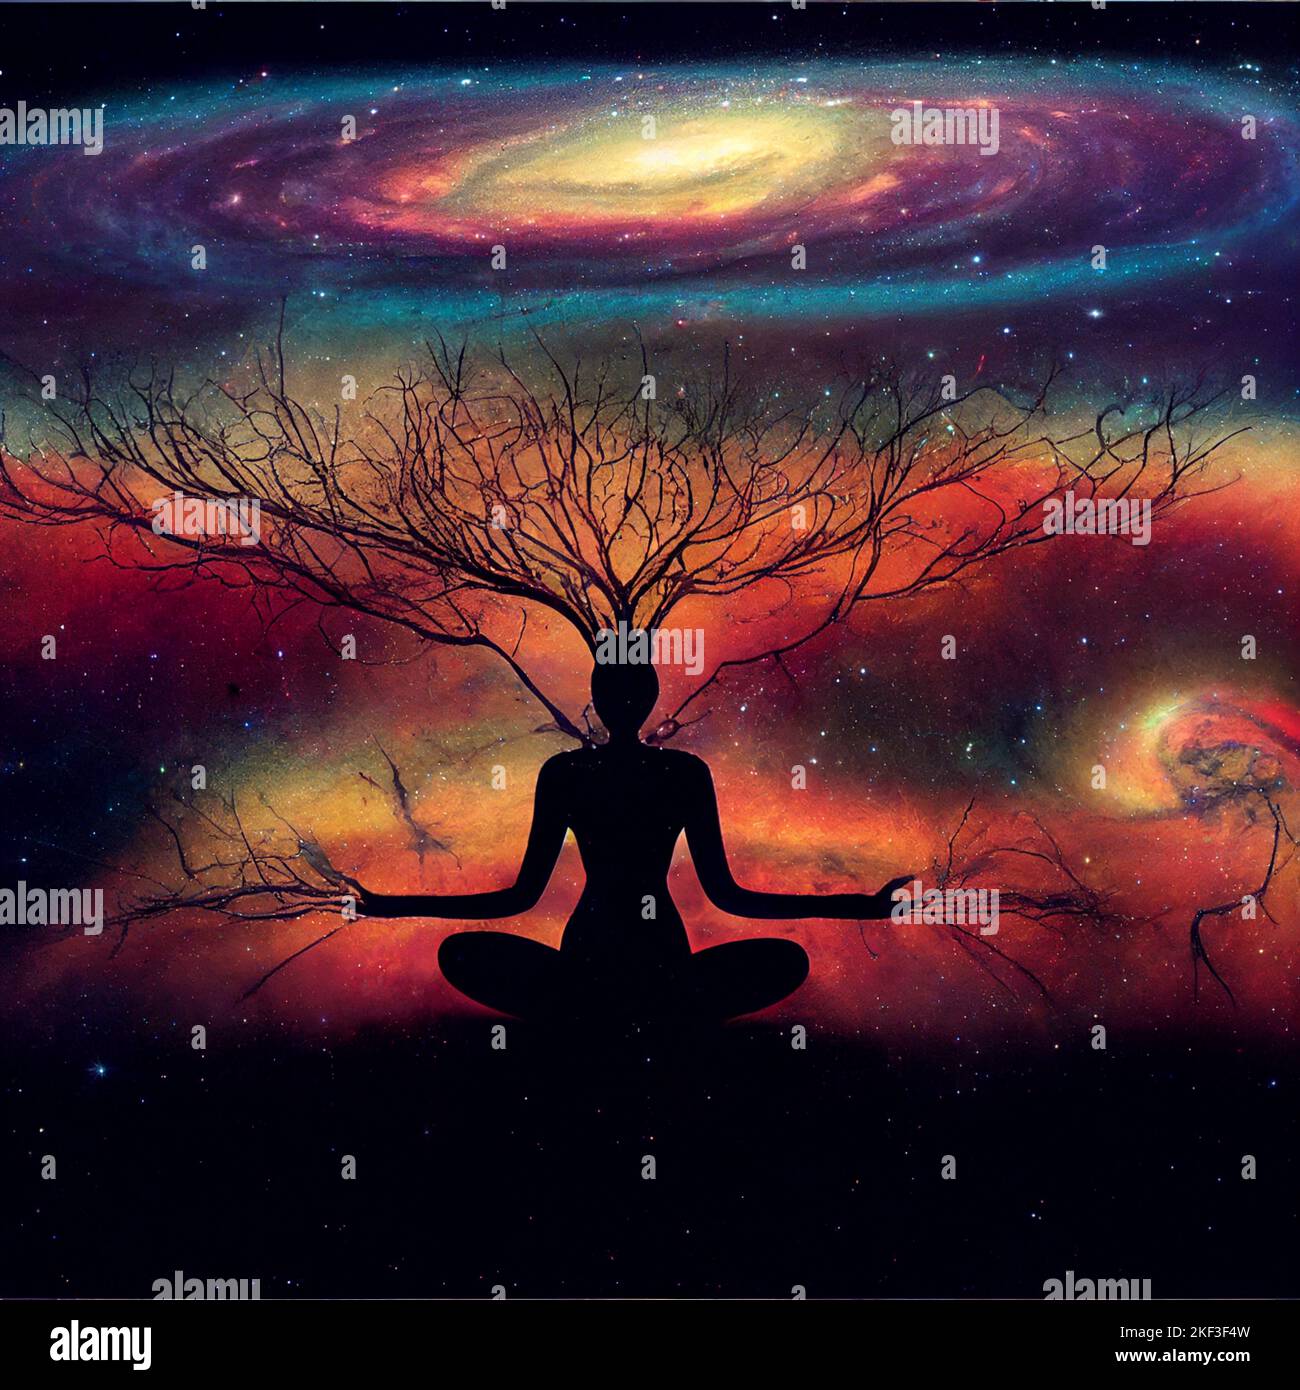 Tree Spirit Meditation, Ökologie Reflexion, Mensch und Baum verflochten, Hintergrund von Galaxien und Nebel, mystische Konzentration, Hingabe und Frieden Stockfoto